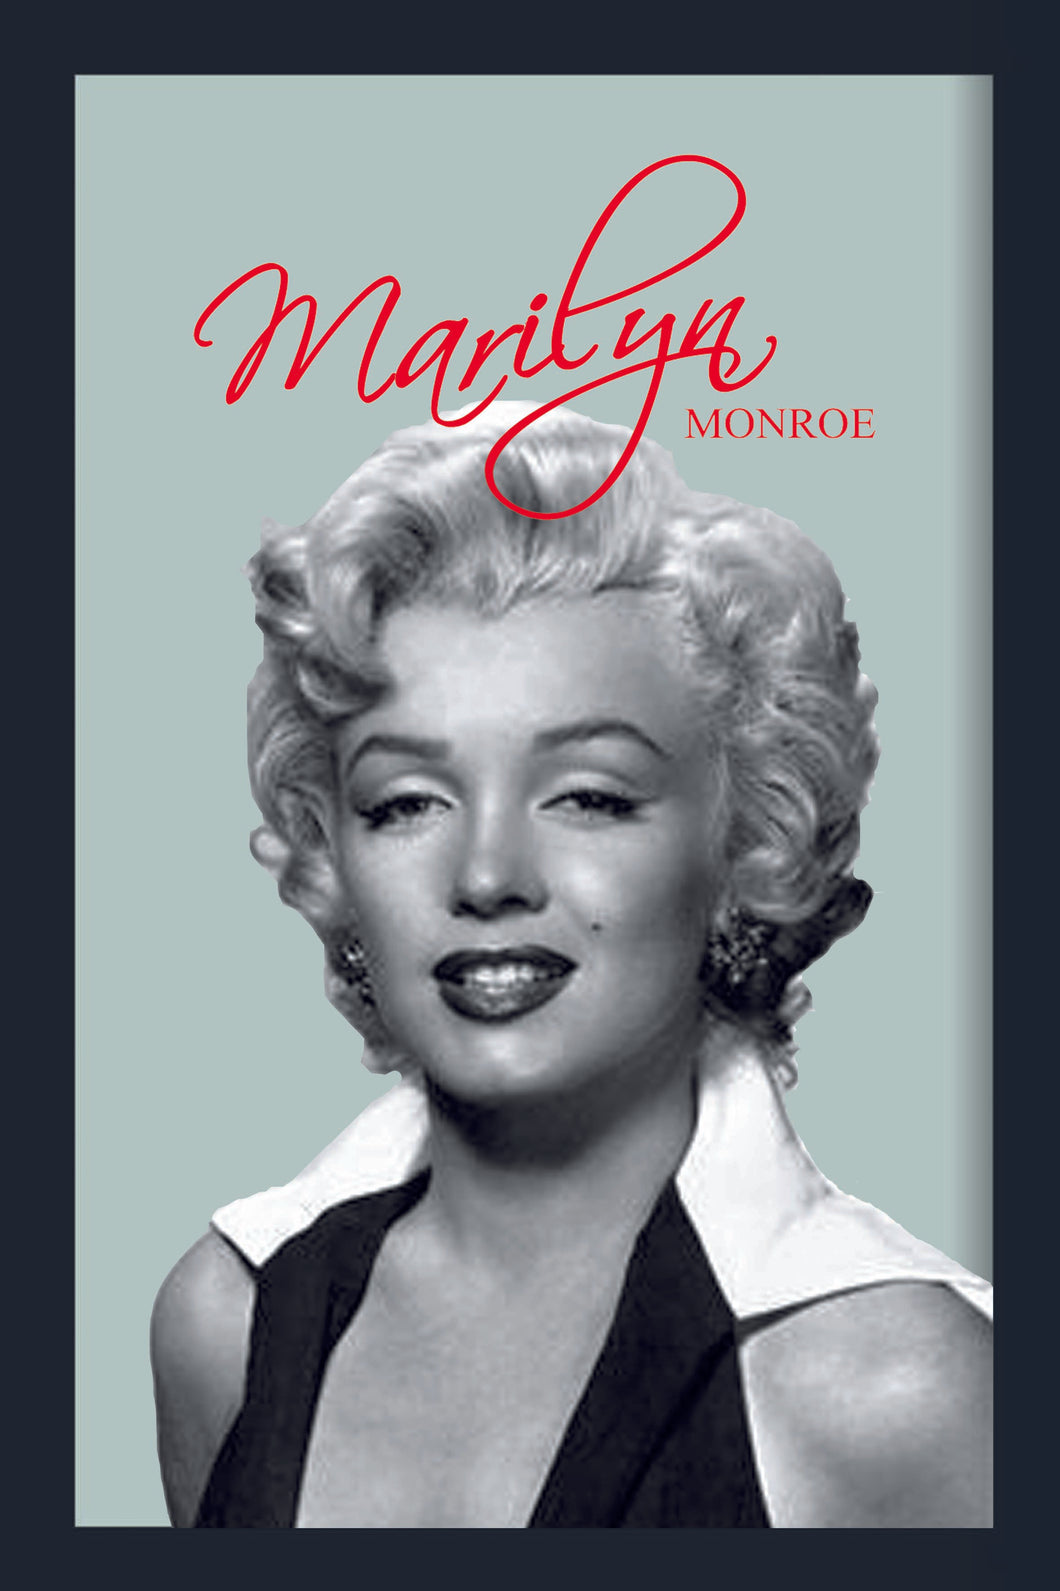 L266 - Marilyn Portrait Dress Mirror